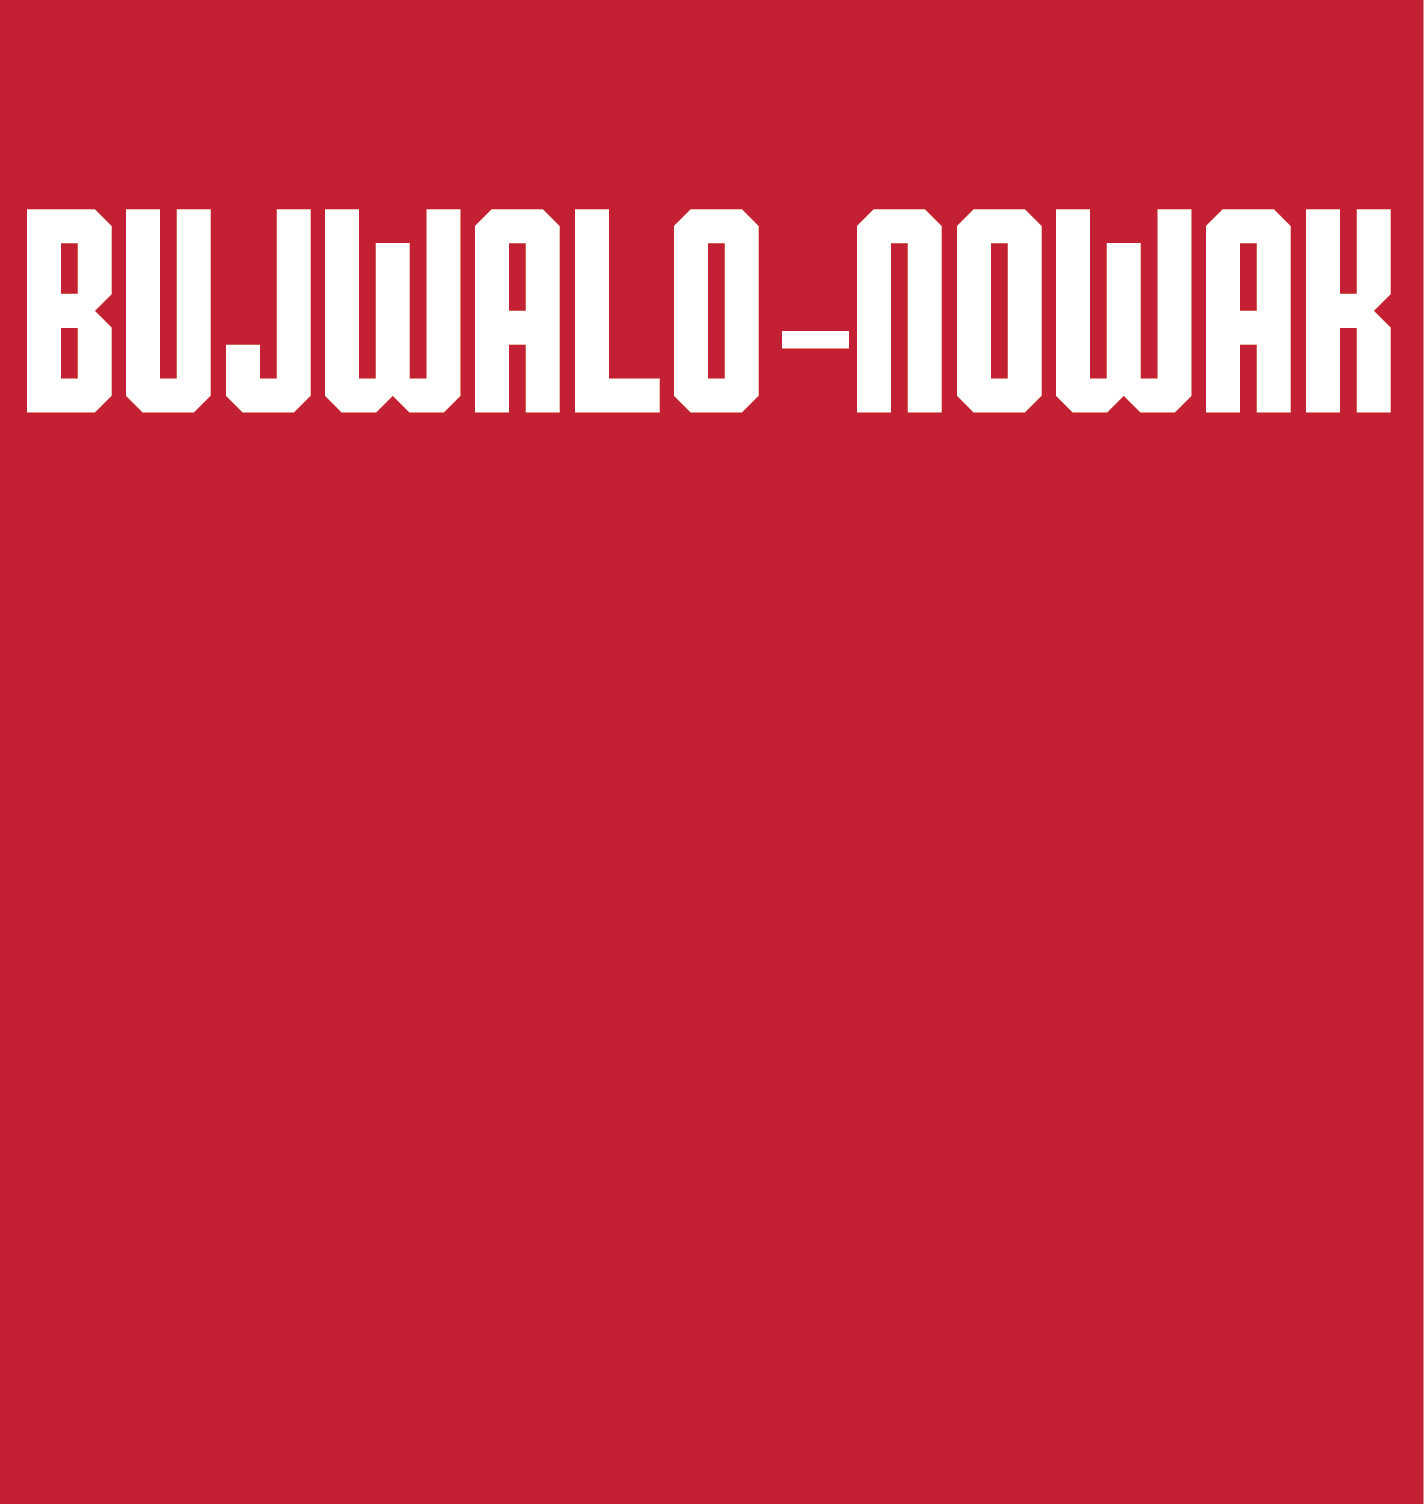 Eliana Bujwalo-Nowak